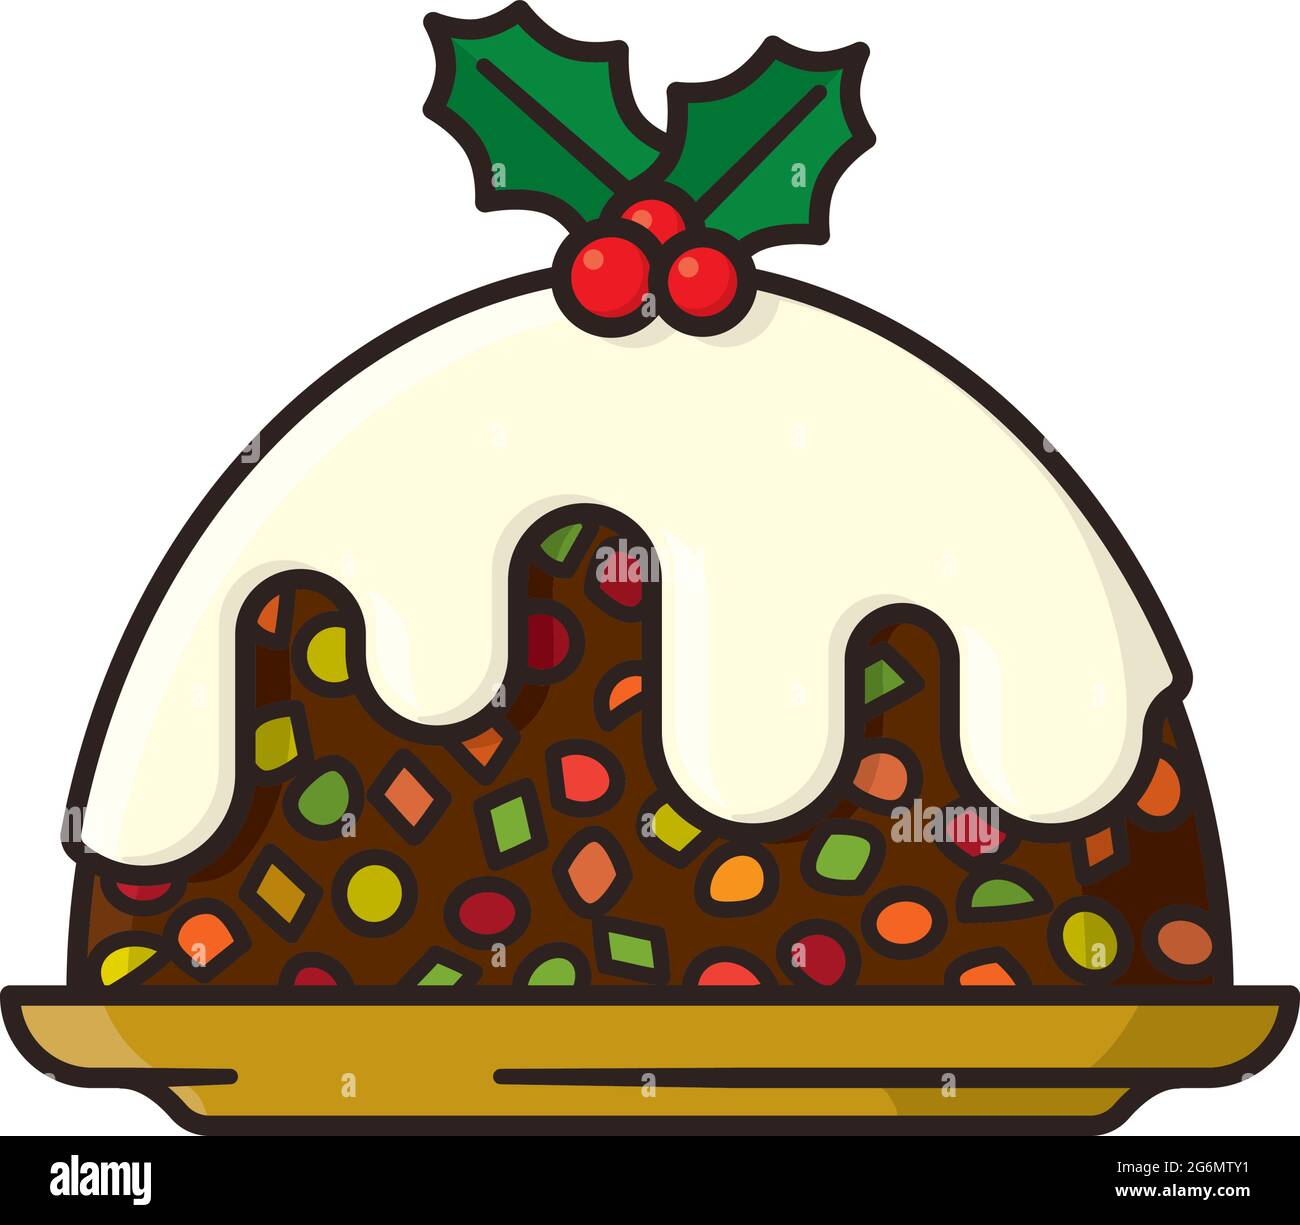 Weihnachten Obstkuchen isoliert Vektor-Illustration für Fruit Cake Day am 27. Dezember. Stock Vektor